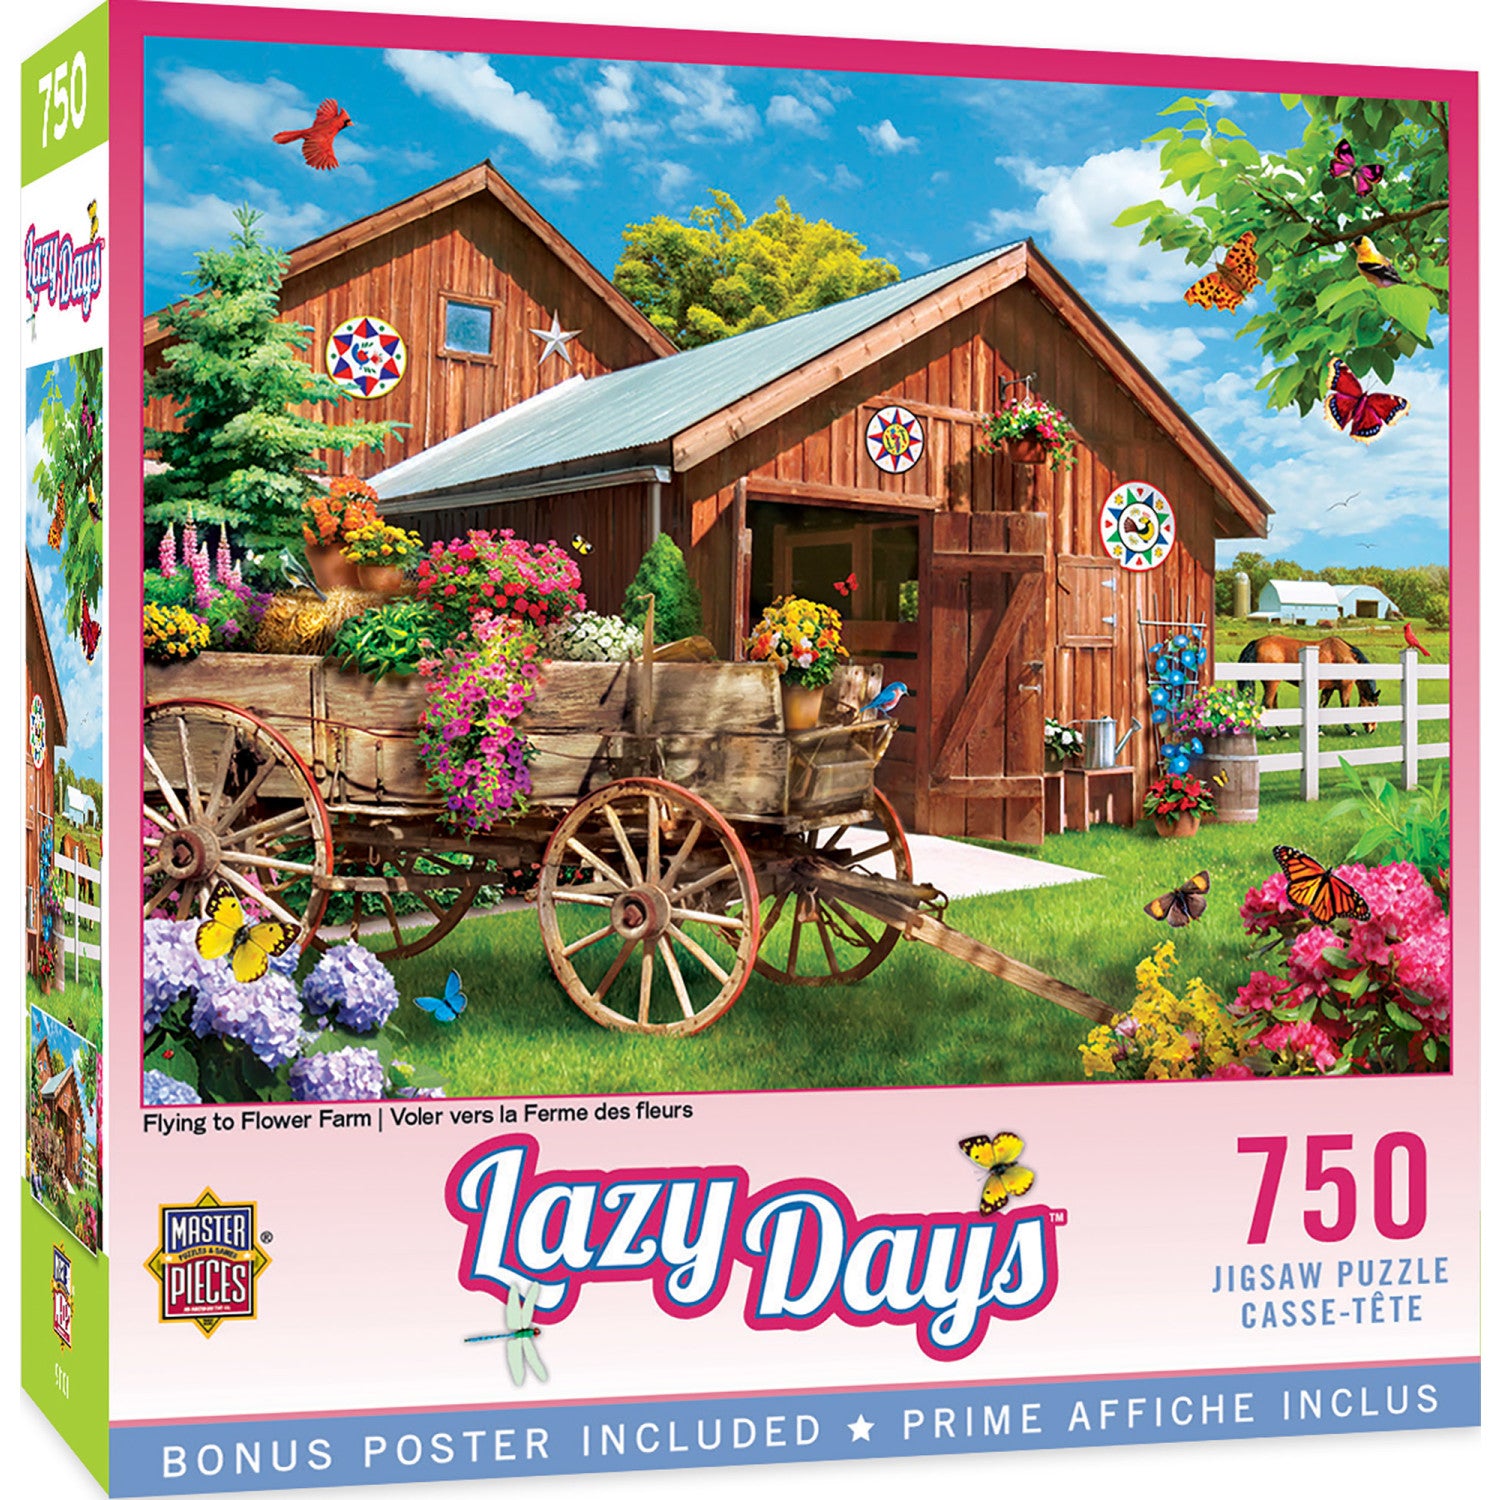 Lazy Days - Flying to Flower Farm 750 Piece Jigsaw Puzzle